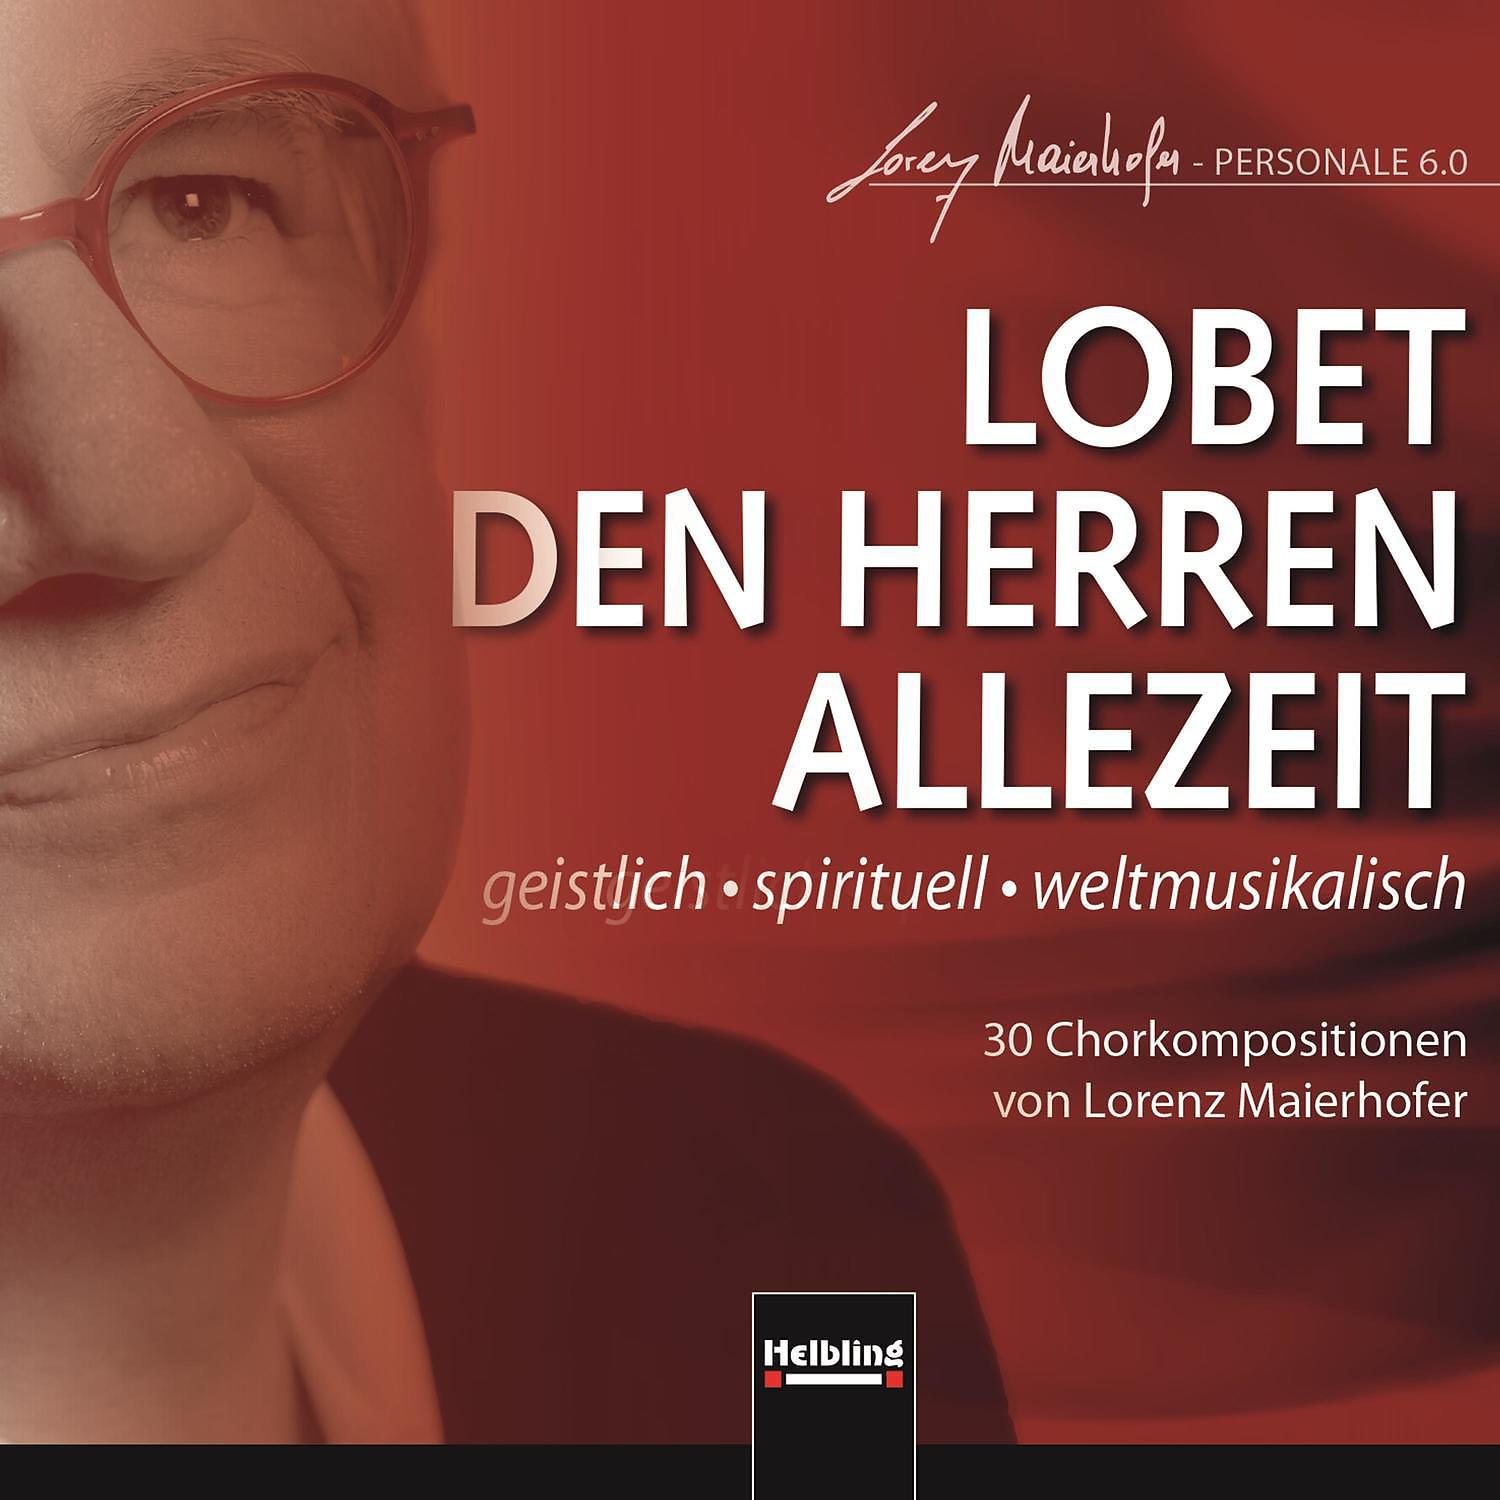 Постер альбома LOBET DEN HERREN ALLEZEIT. geistlich - spirituell - weltmusikalisch